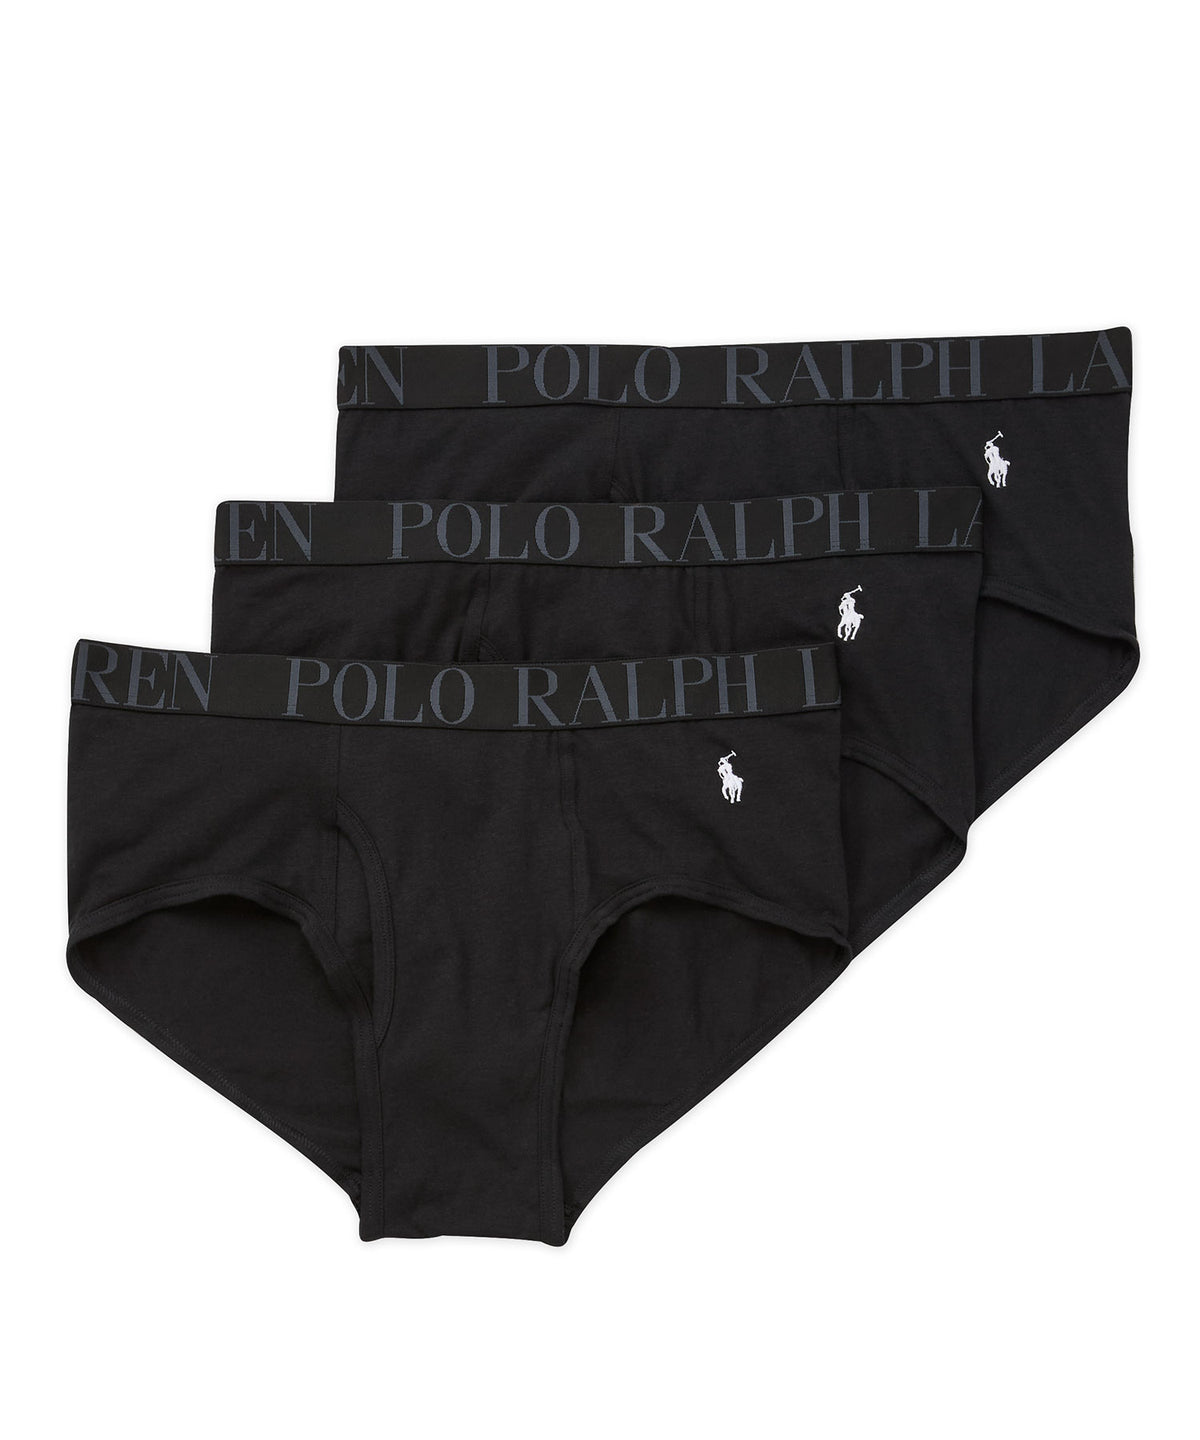 Polo Ralph Lauren Slip classici (confezione da 3), Men's Big & Tall